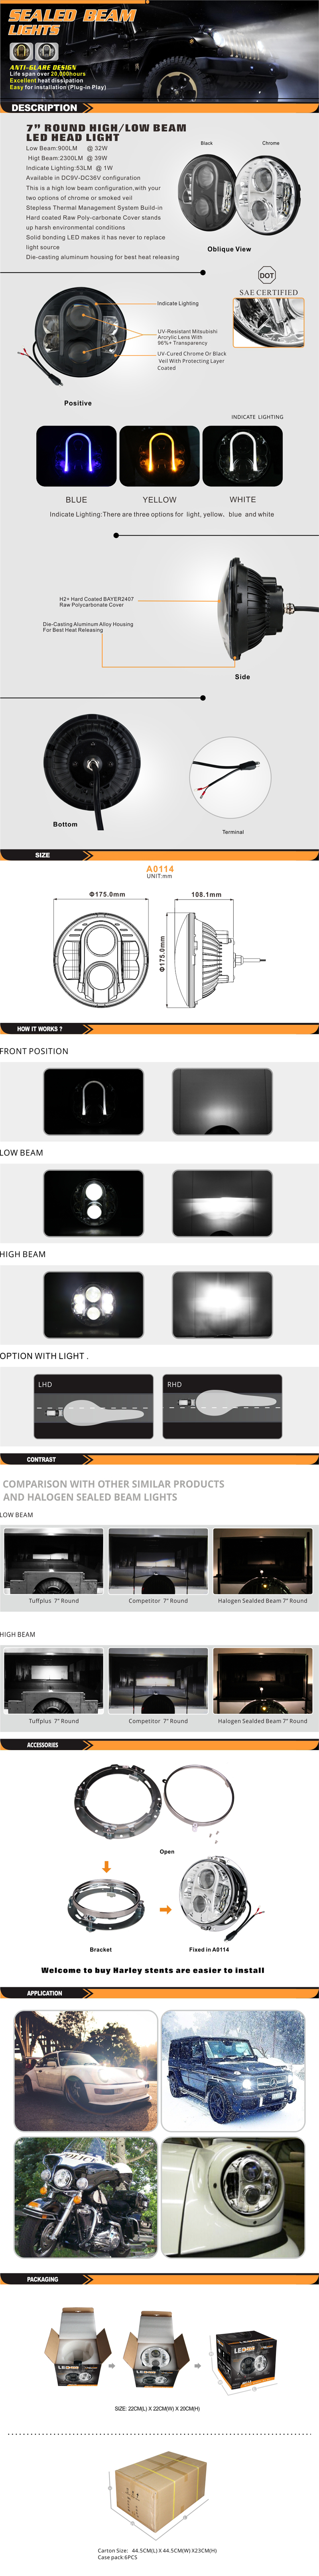 A0114-标准灯产品描述页